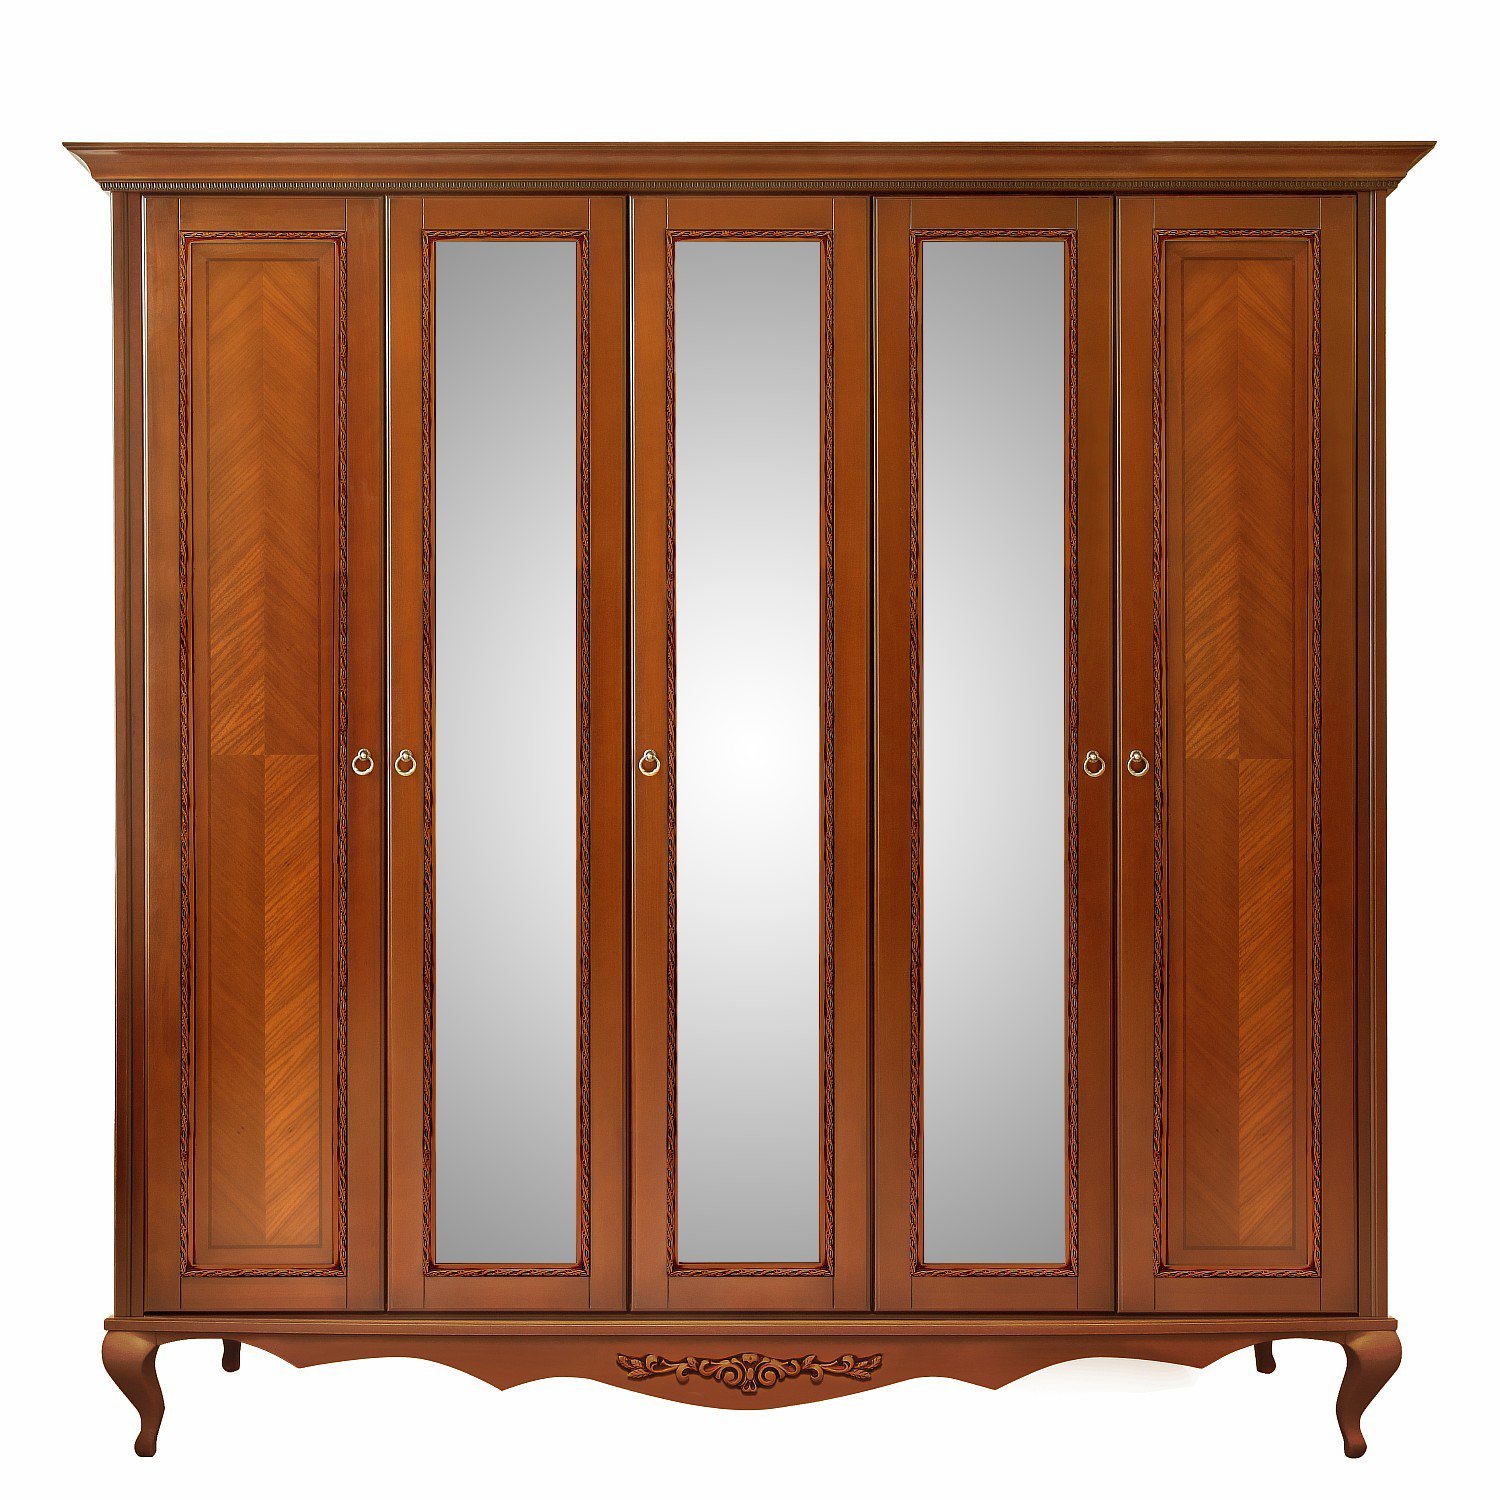 Шкаф платяной Timber Неаполь, 5-ти дверный с зеркалами 249x65x227 см цвет: янтарь (T-525)T-525